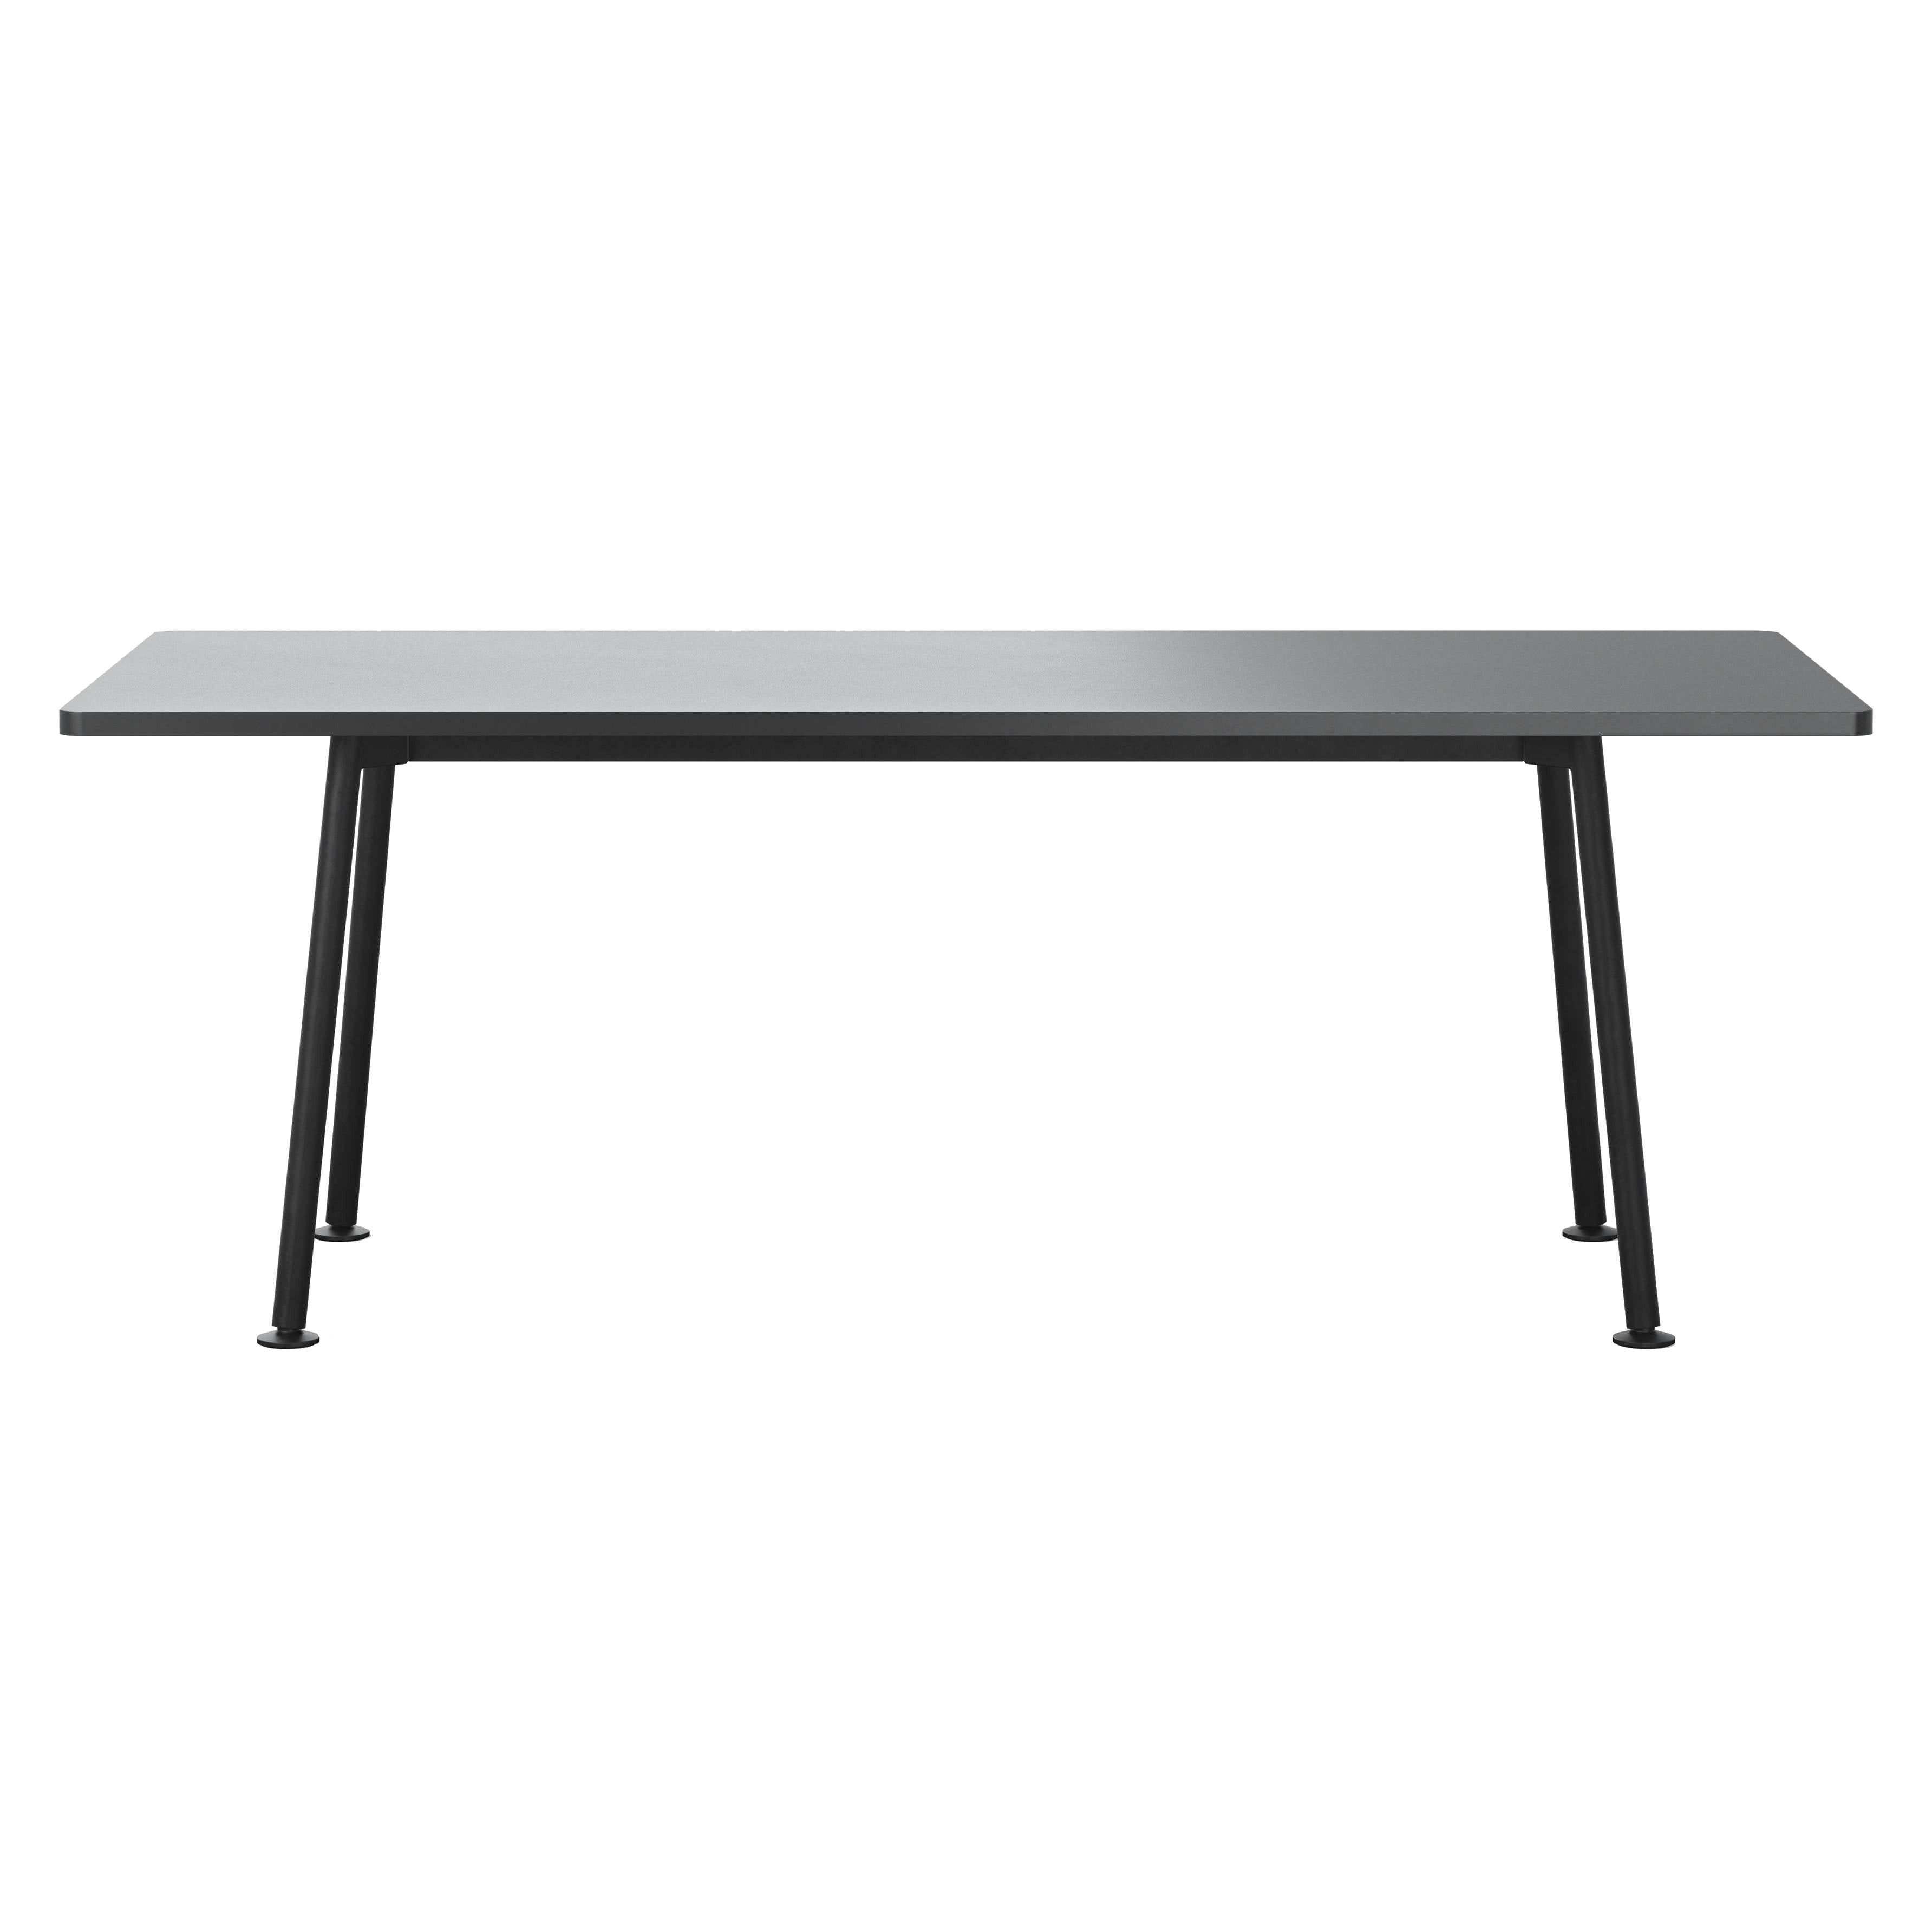 Landa Table: Counter + Small - 78.7